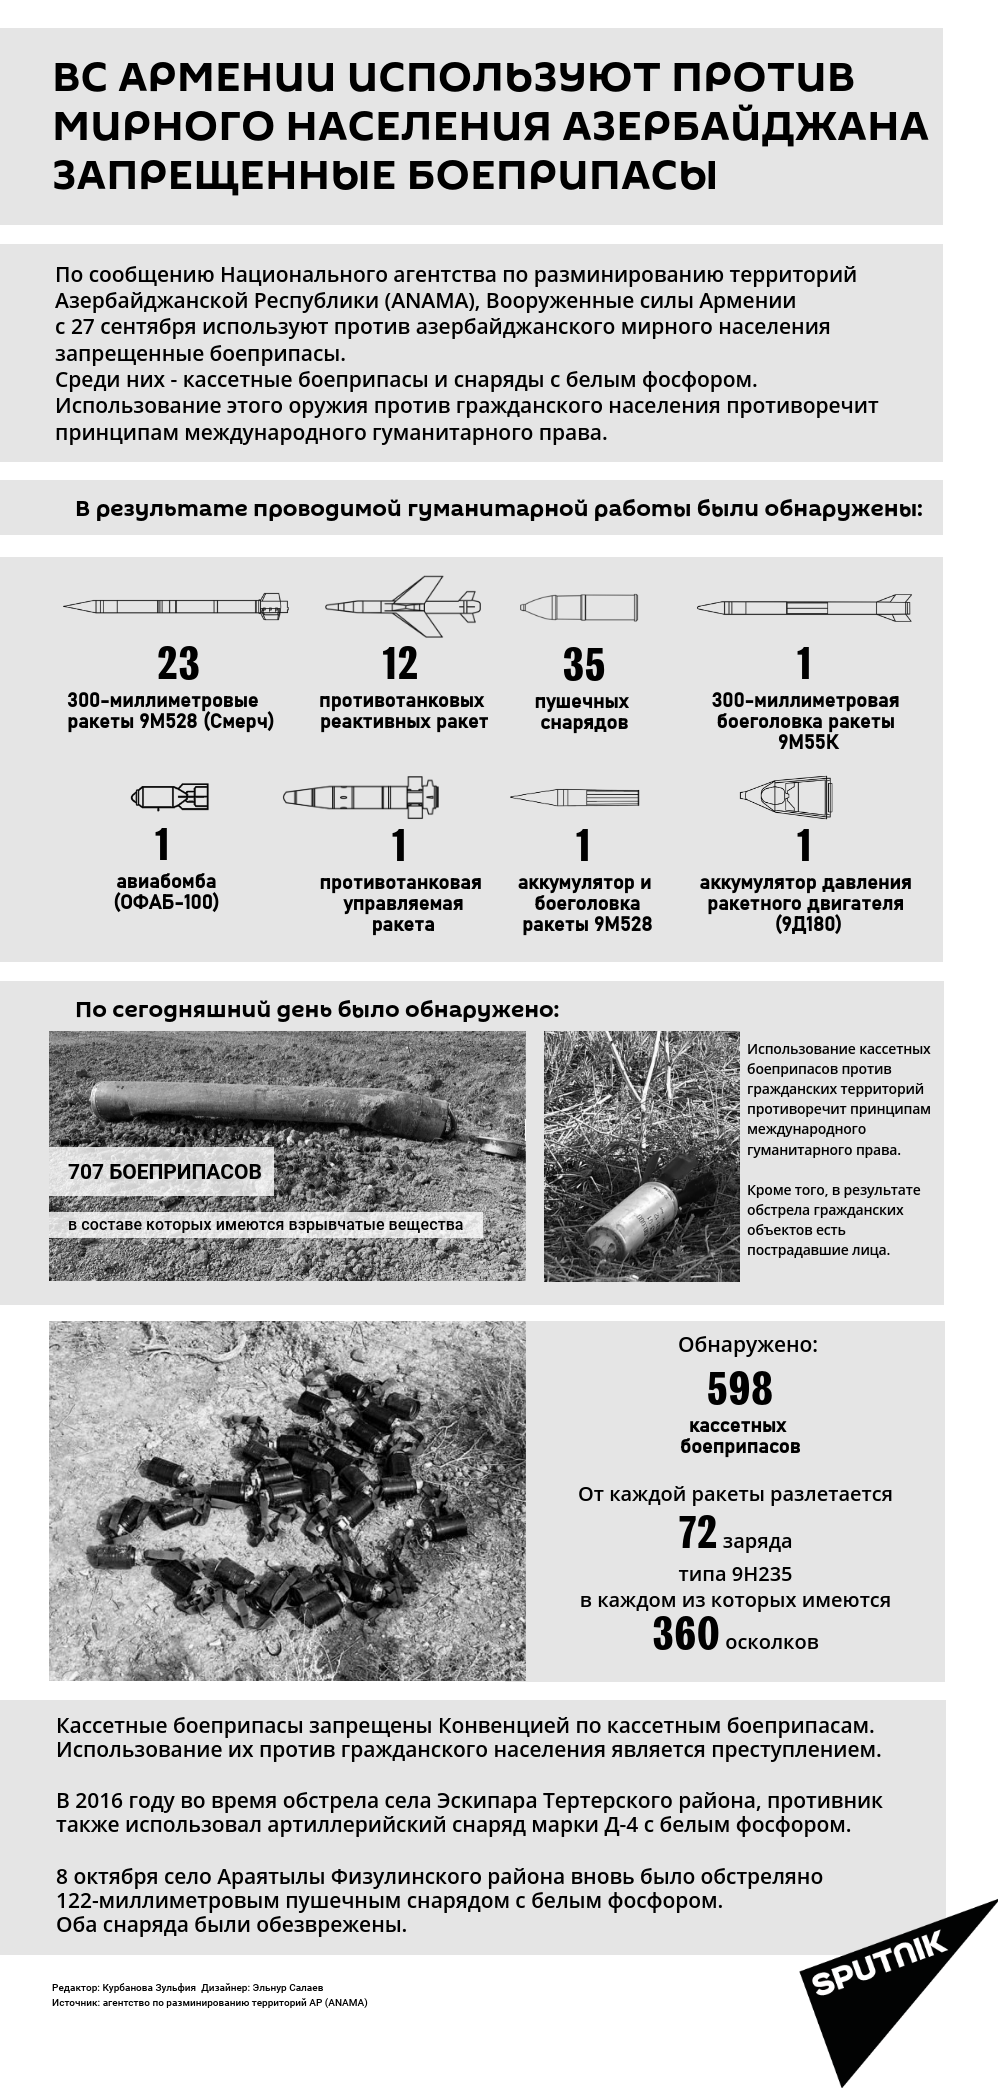 Инфографика: Армянские запрещенные боеприпасы - Sputnik Азербайджан